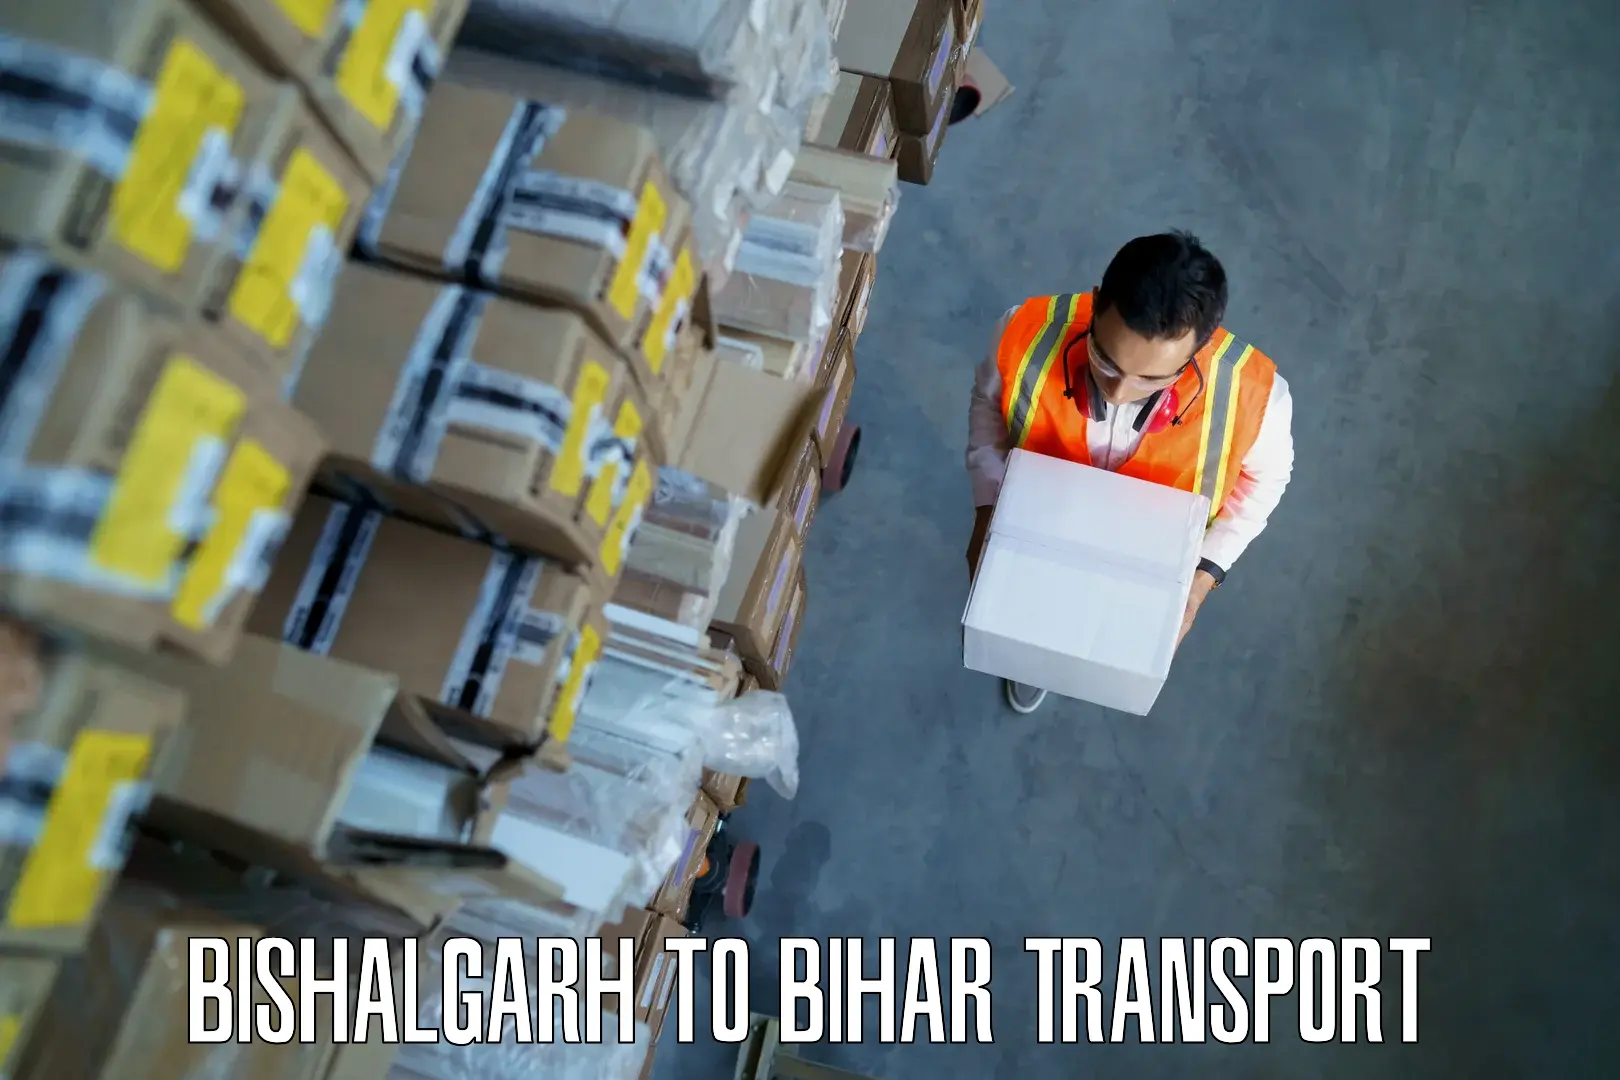 Road transport online services Bishalgarh to Sheikhpura